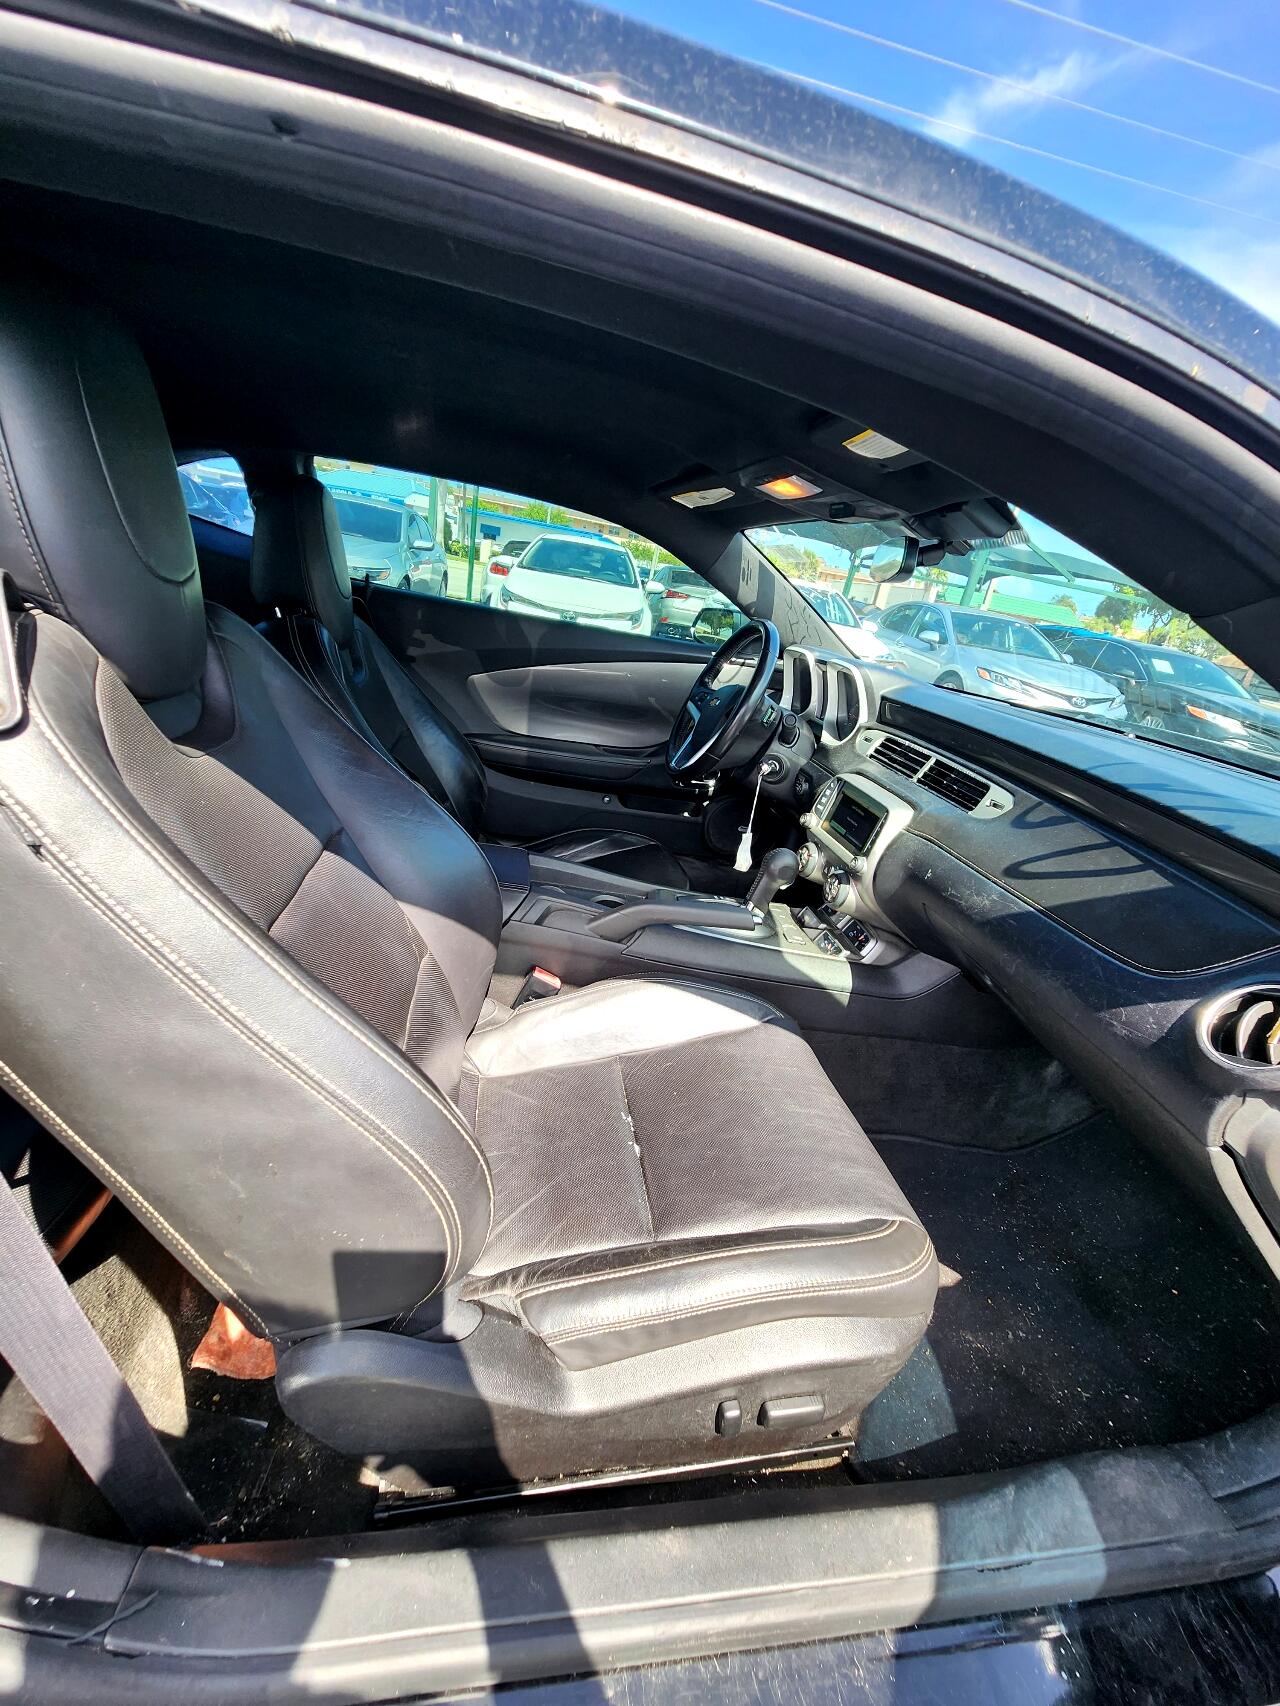 2015 CHEVROLET Camaro Coupe - $18,999